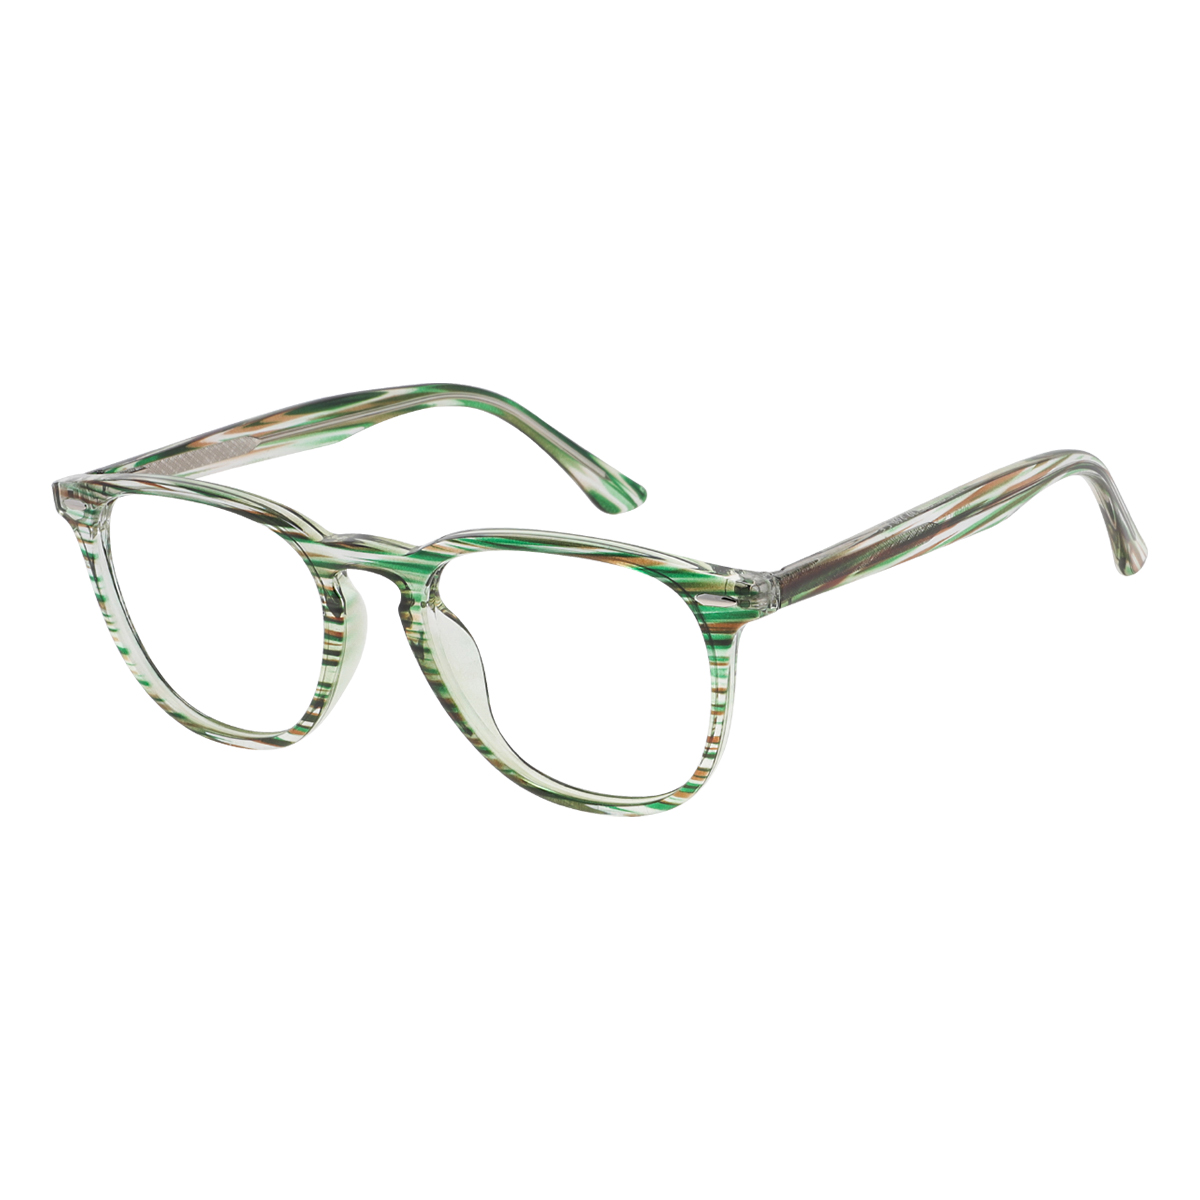 Nicolette - Square Green-Strip Reading Glasses for Men & Women